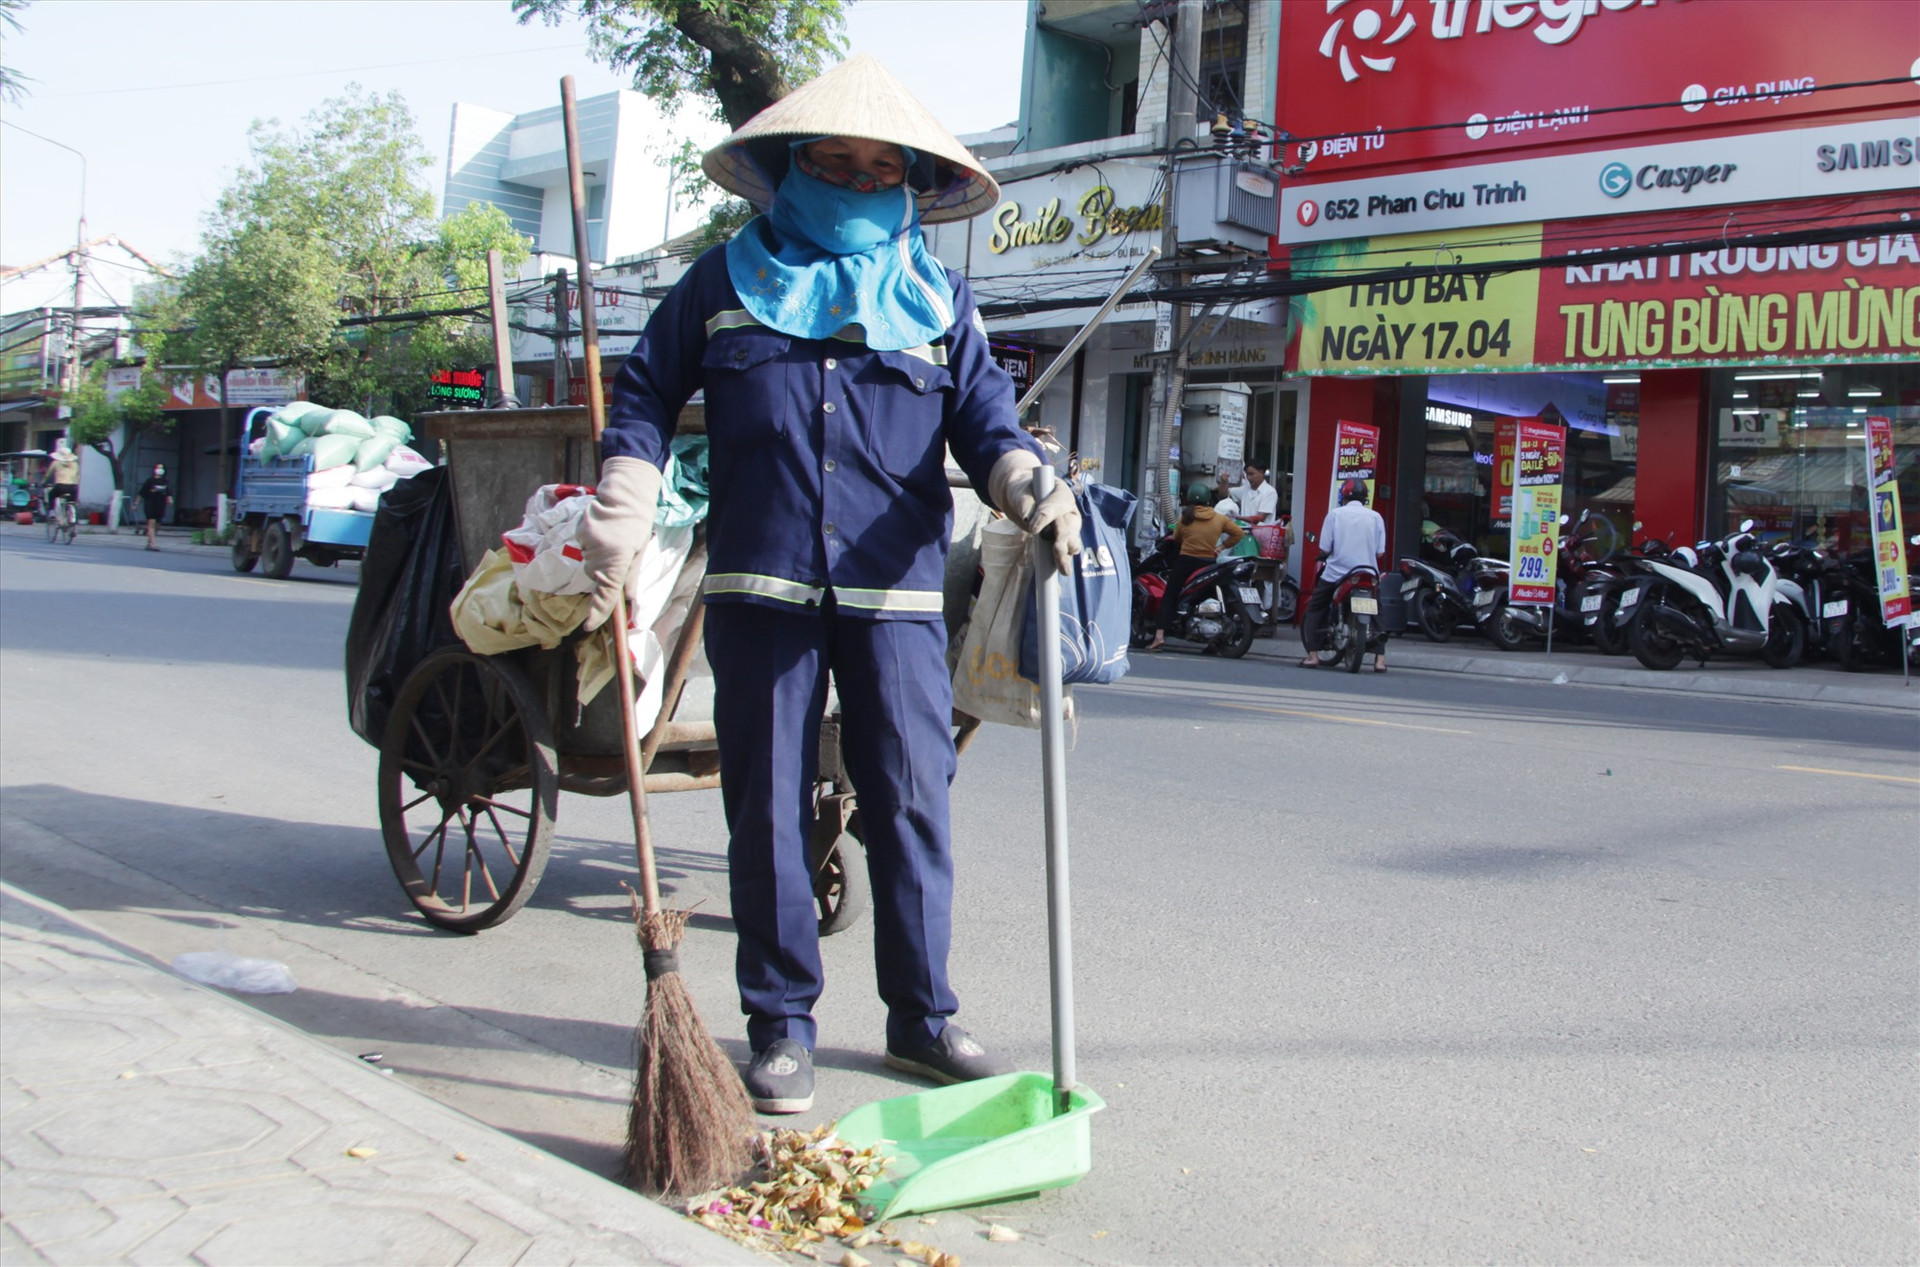 Bà Tình (52 tuổi, công nhân vệ sinh môi trường đô thị) vẫn cố hoàn thành việc vệ sinh đường phố trên đường Phan Châu Trinh vào lúc 14 giờ ngày 11.5.